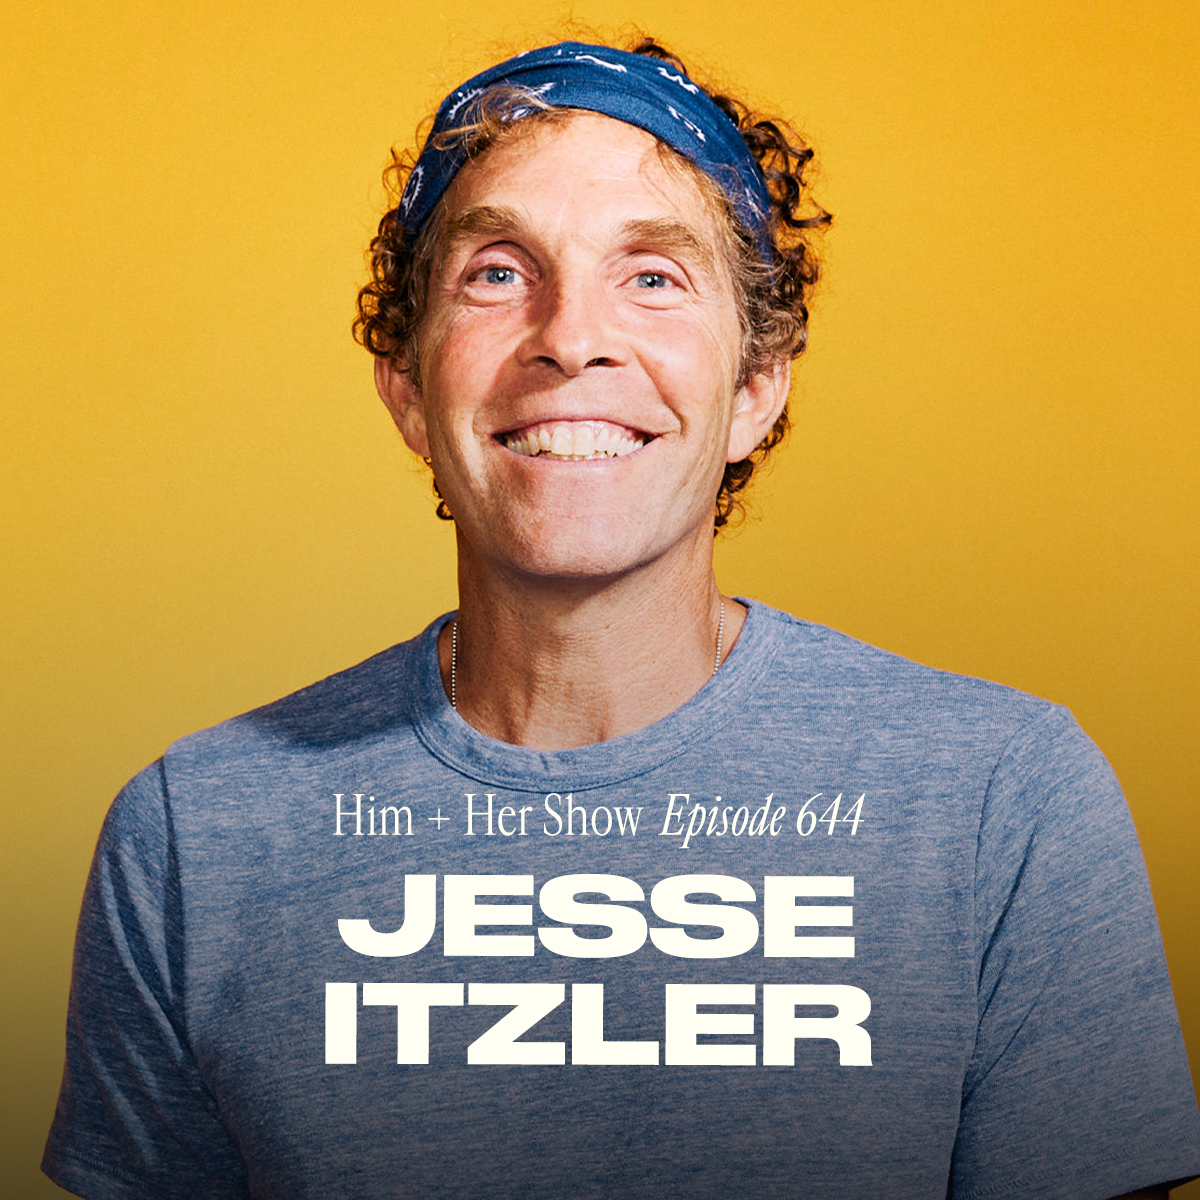 Jesse Itzler